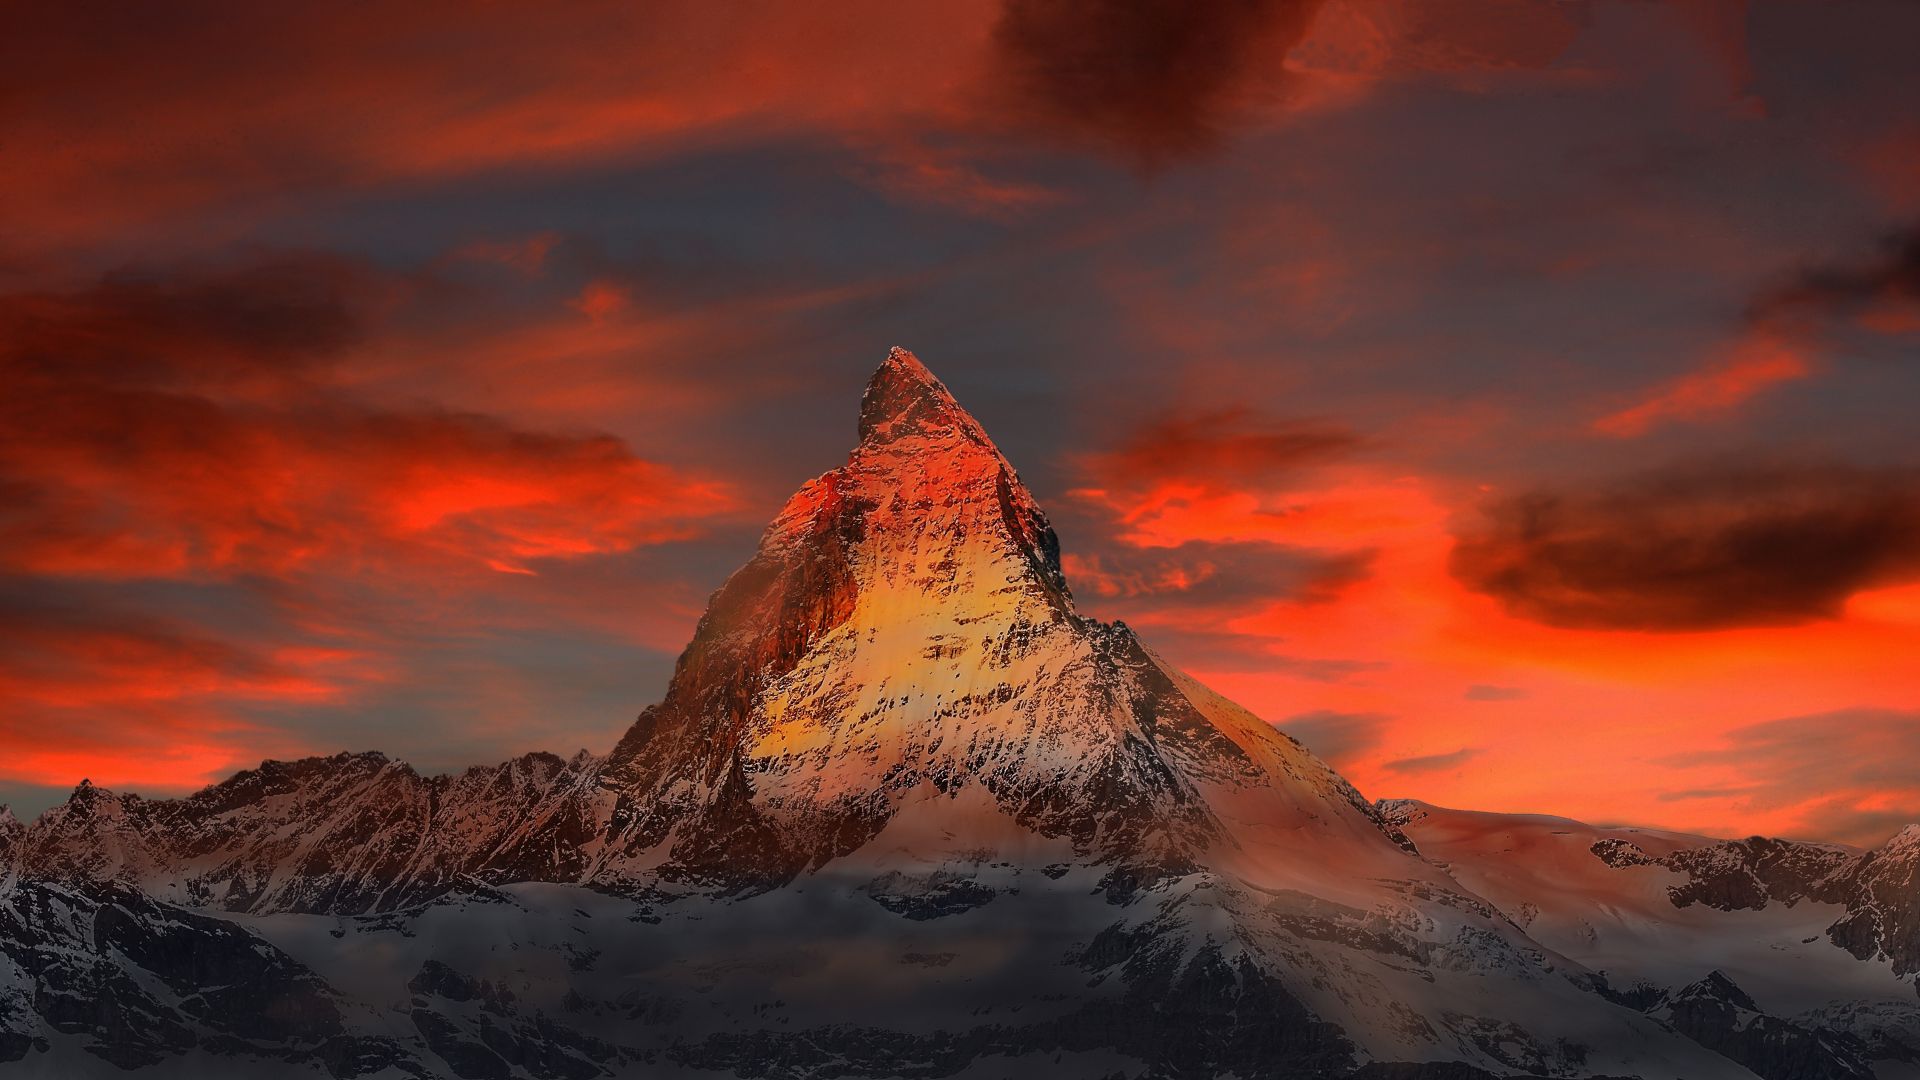 Desktop Wallpaper Matterhorn Sunset Mountains Clouds 5k Hd Image Picture Background 9d316c